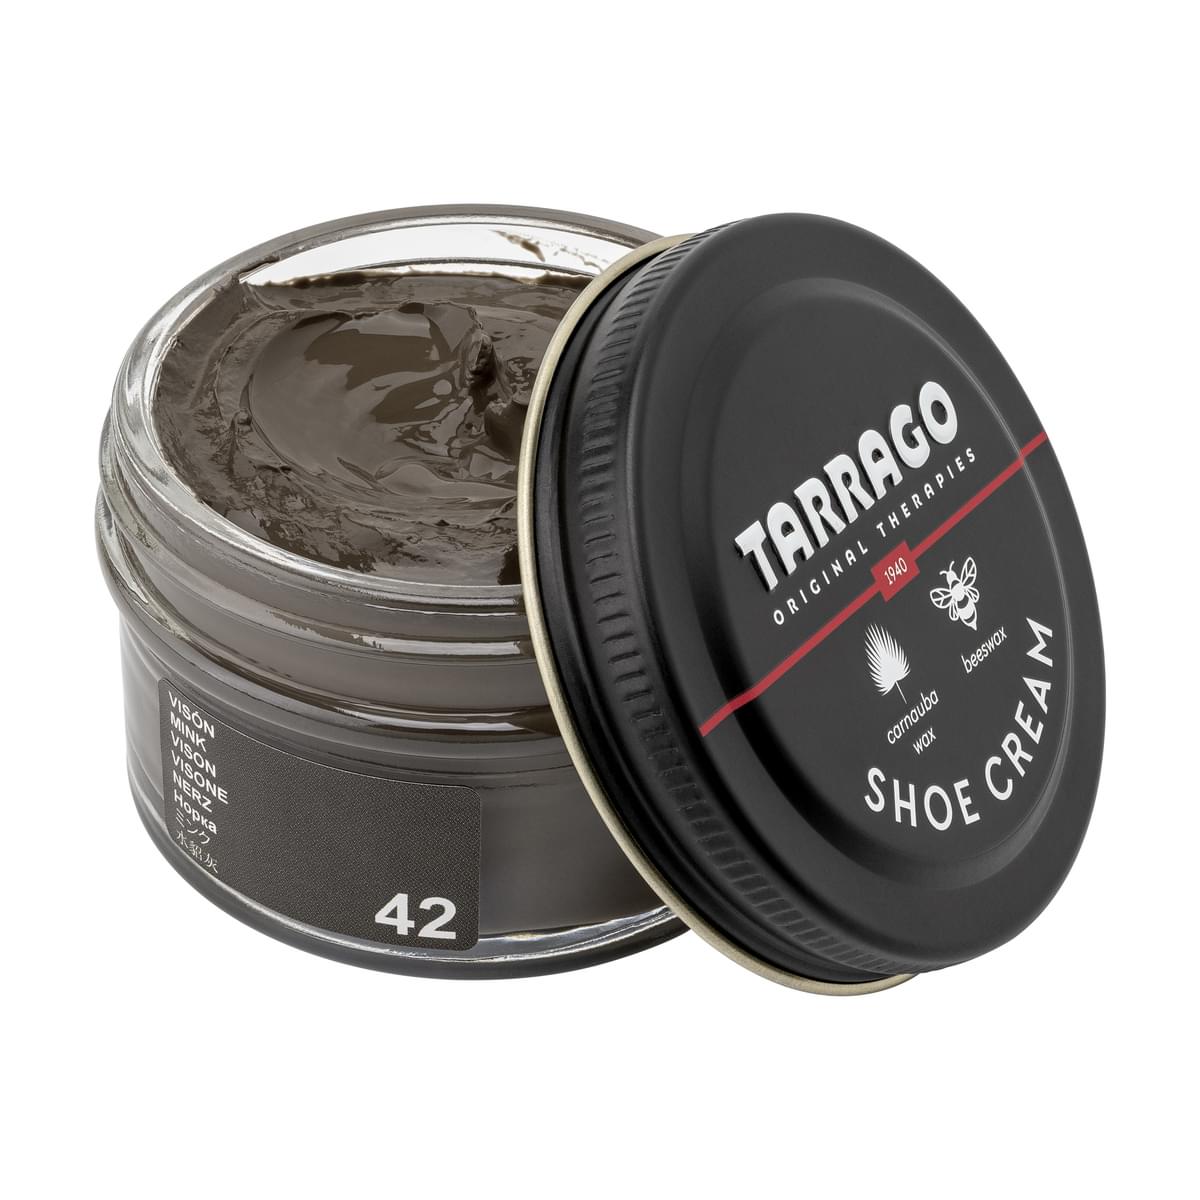 Tarrago Shoe Cream  - Mink - 42